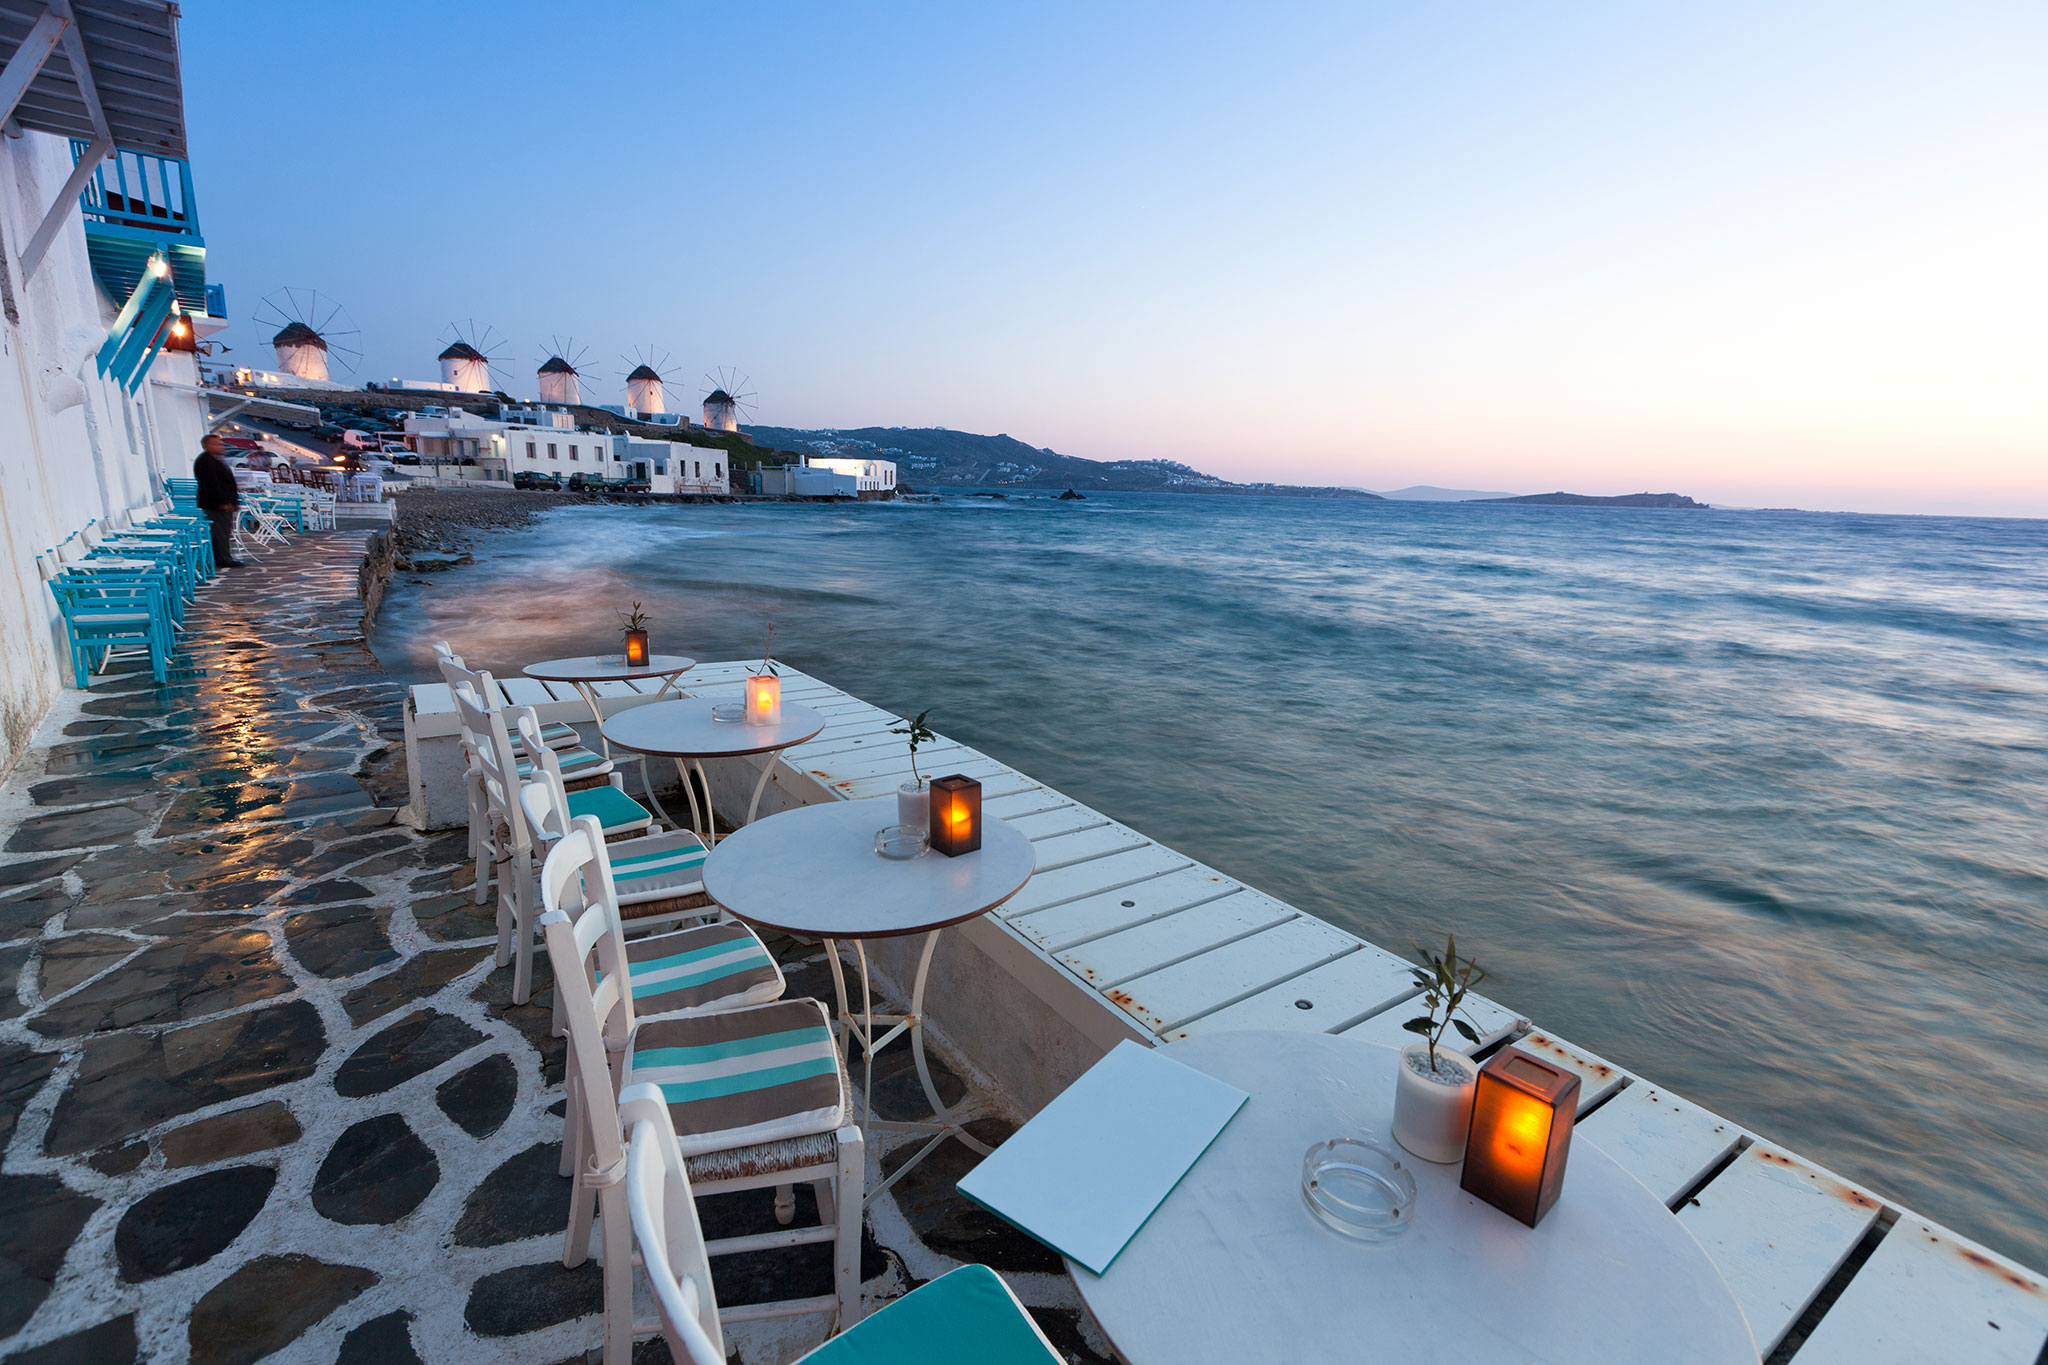 Tische und Stühle mit Blick auf das Mittelmeer in der Abenddämmerung auf Mykonos.